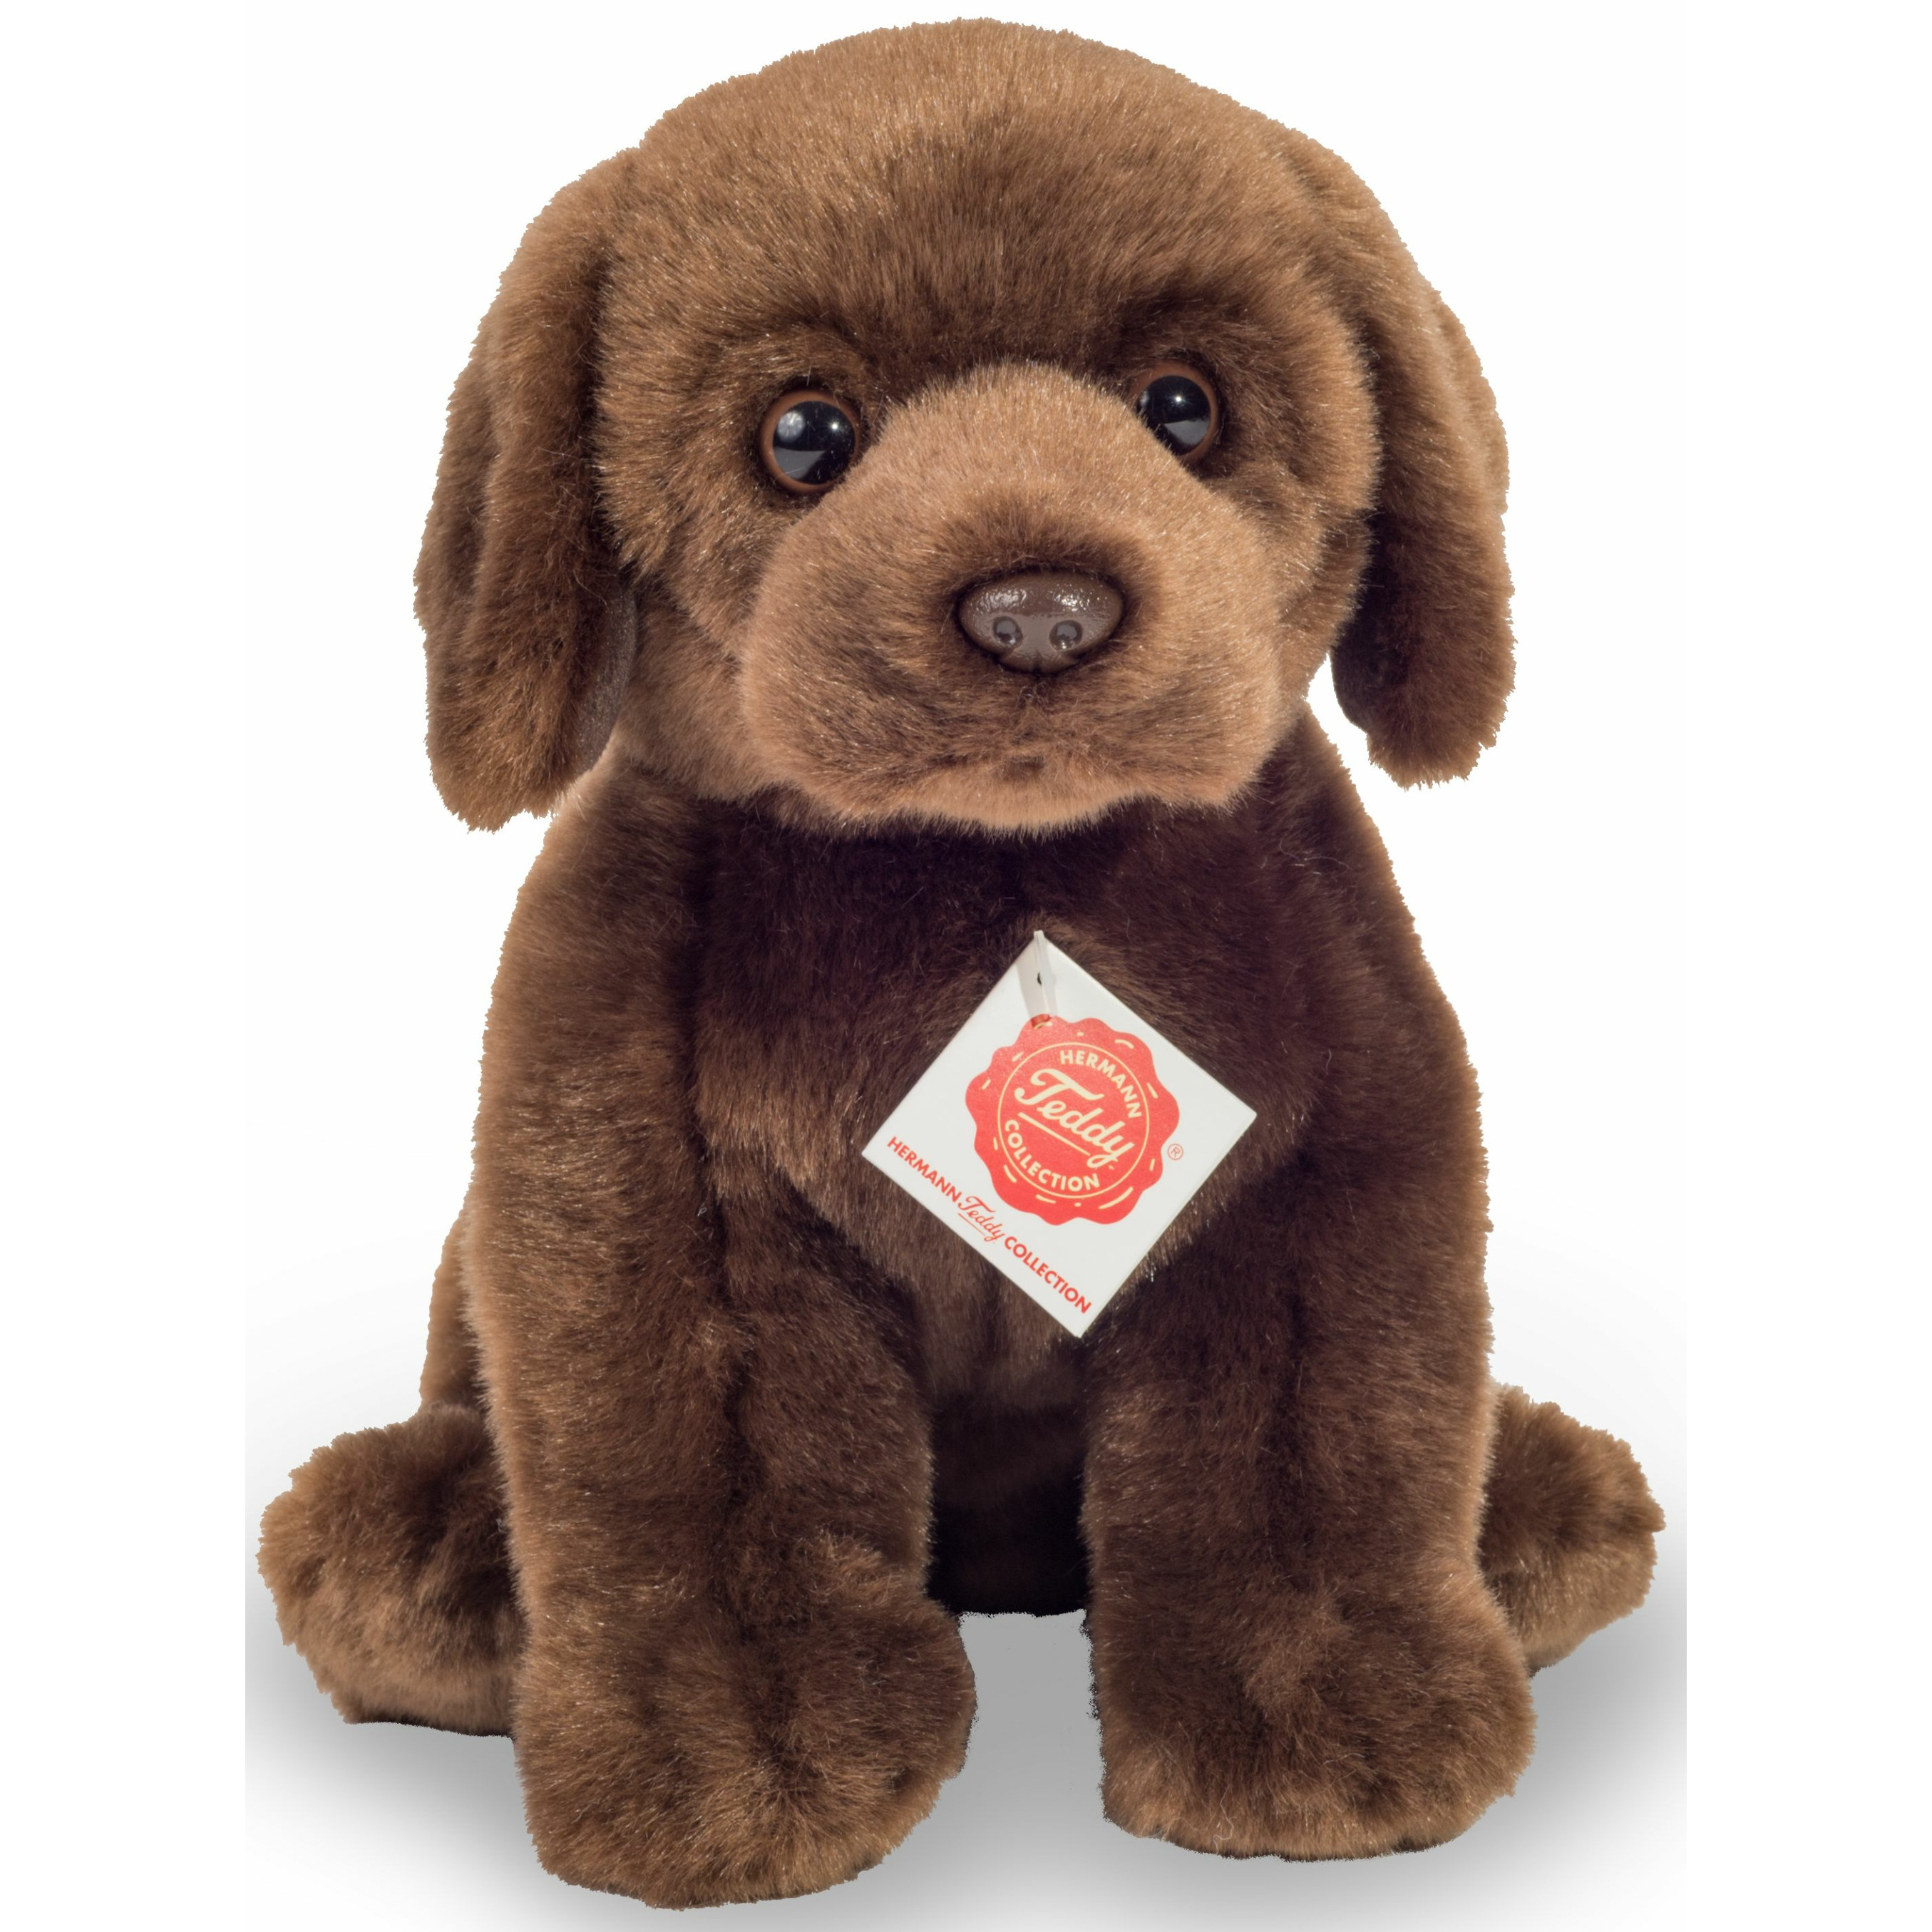 Hermann Teddy Knuffeldier hond Labrador zachte pluche premium knuffels donkerbruin 25 cm